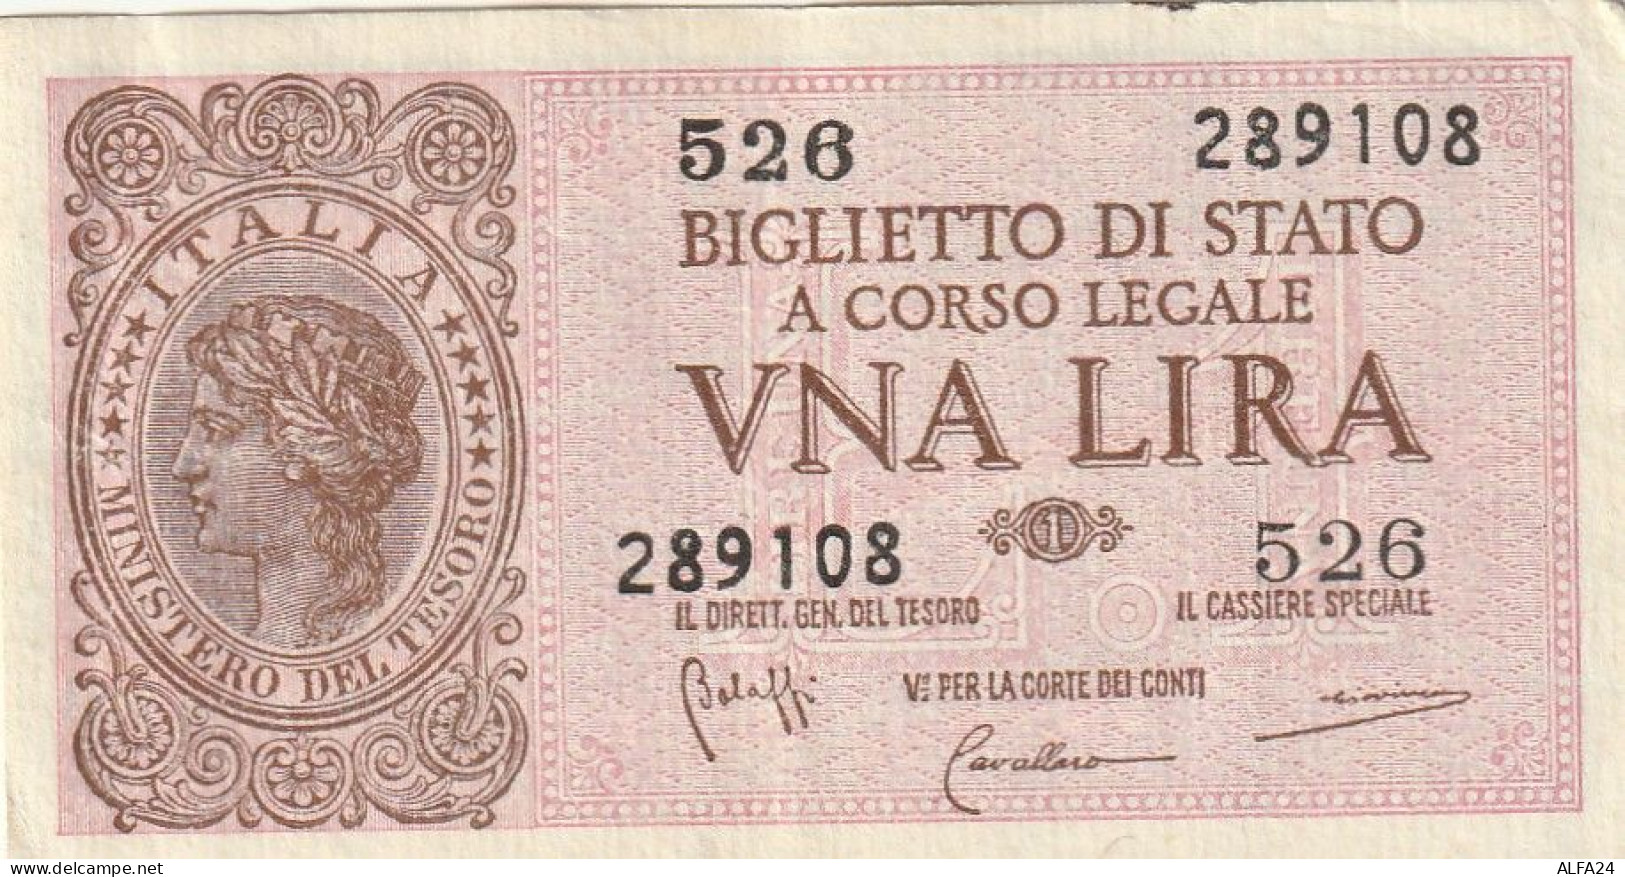 BANCONOTA BIGLIETTO DI STATO ITALIA 1 LIRA EF  (B_368 - Italia – 1 Lira